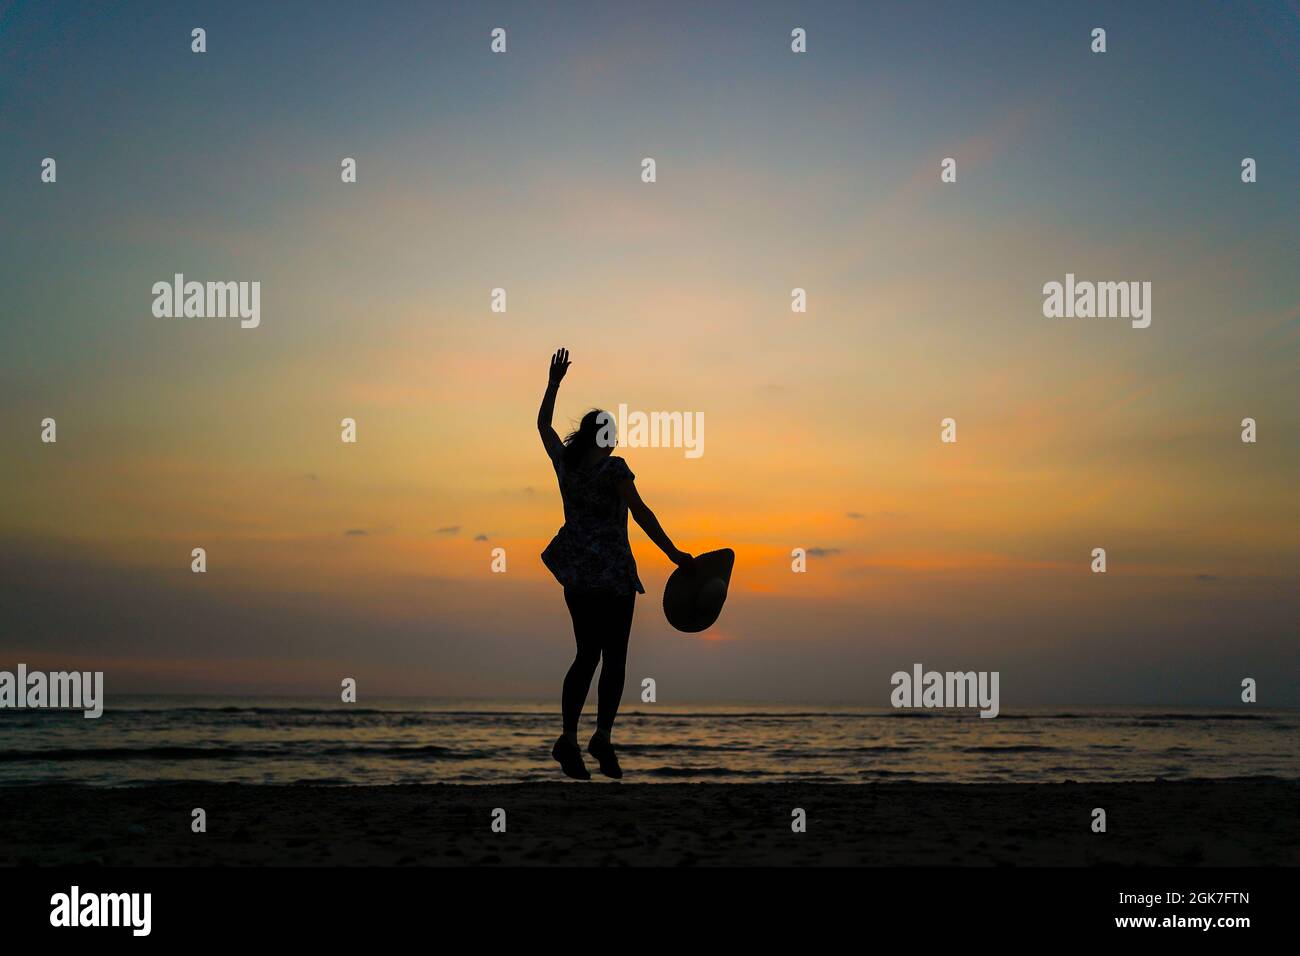 Rückansicht einer isolierten jungen Frau, die in der Luft springt, einen großen Sonnenhut in der Hand hält, bei Sonnenuntergang an einem britischen Strand, während eines Sommerurlaubs. Springen Sie vor Freude. Stockfoto